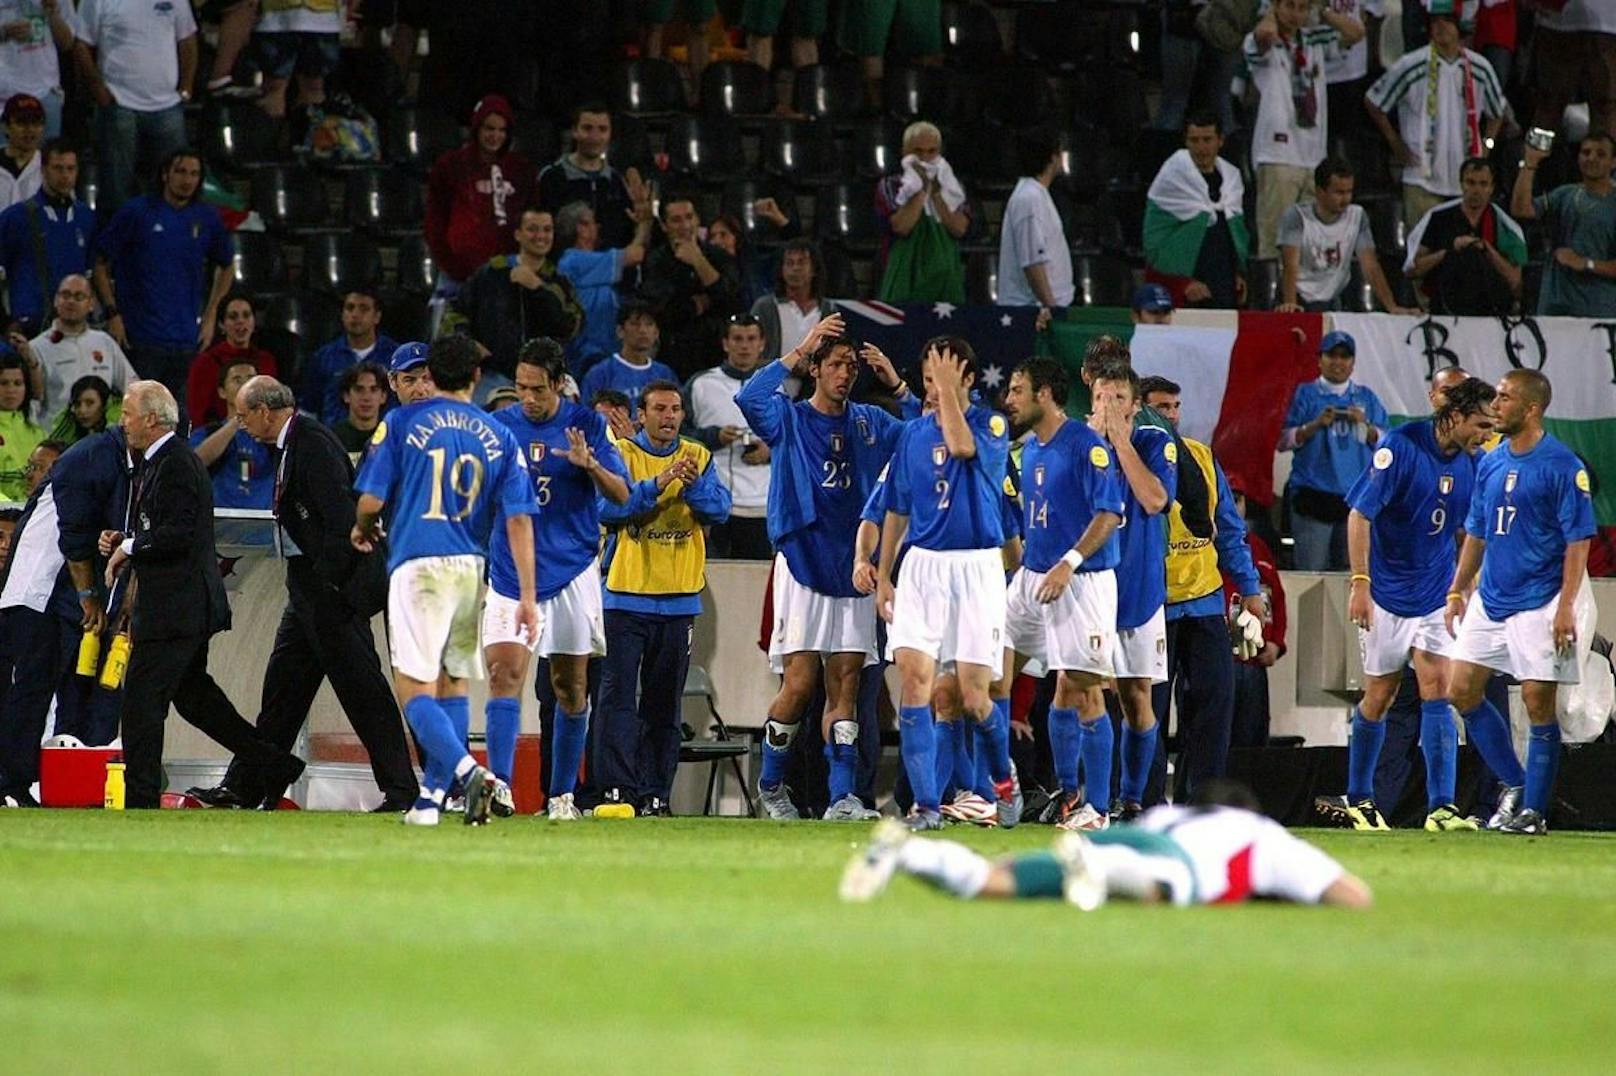 Trotz zeitgleichem Sieg gegen Bulgarien mussten sich die Italiener aus dem Turnier verabschieden.